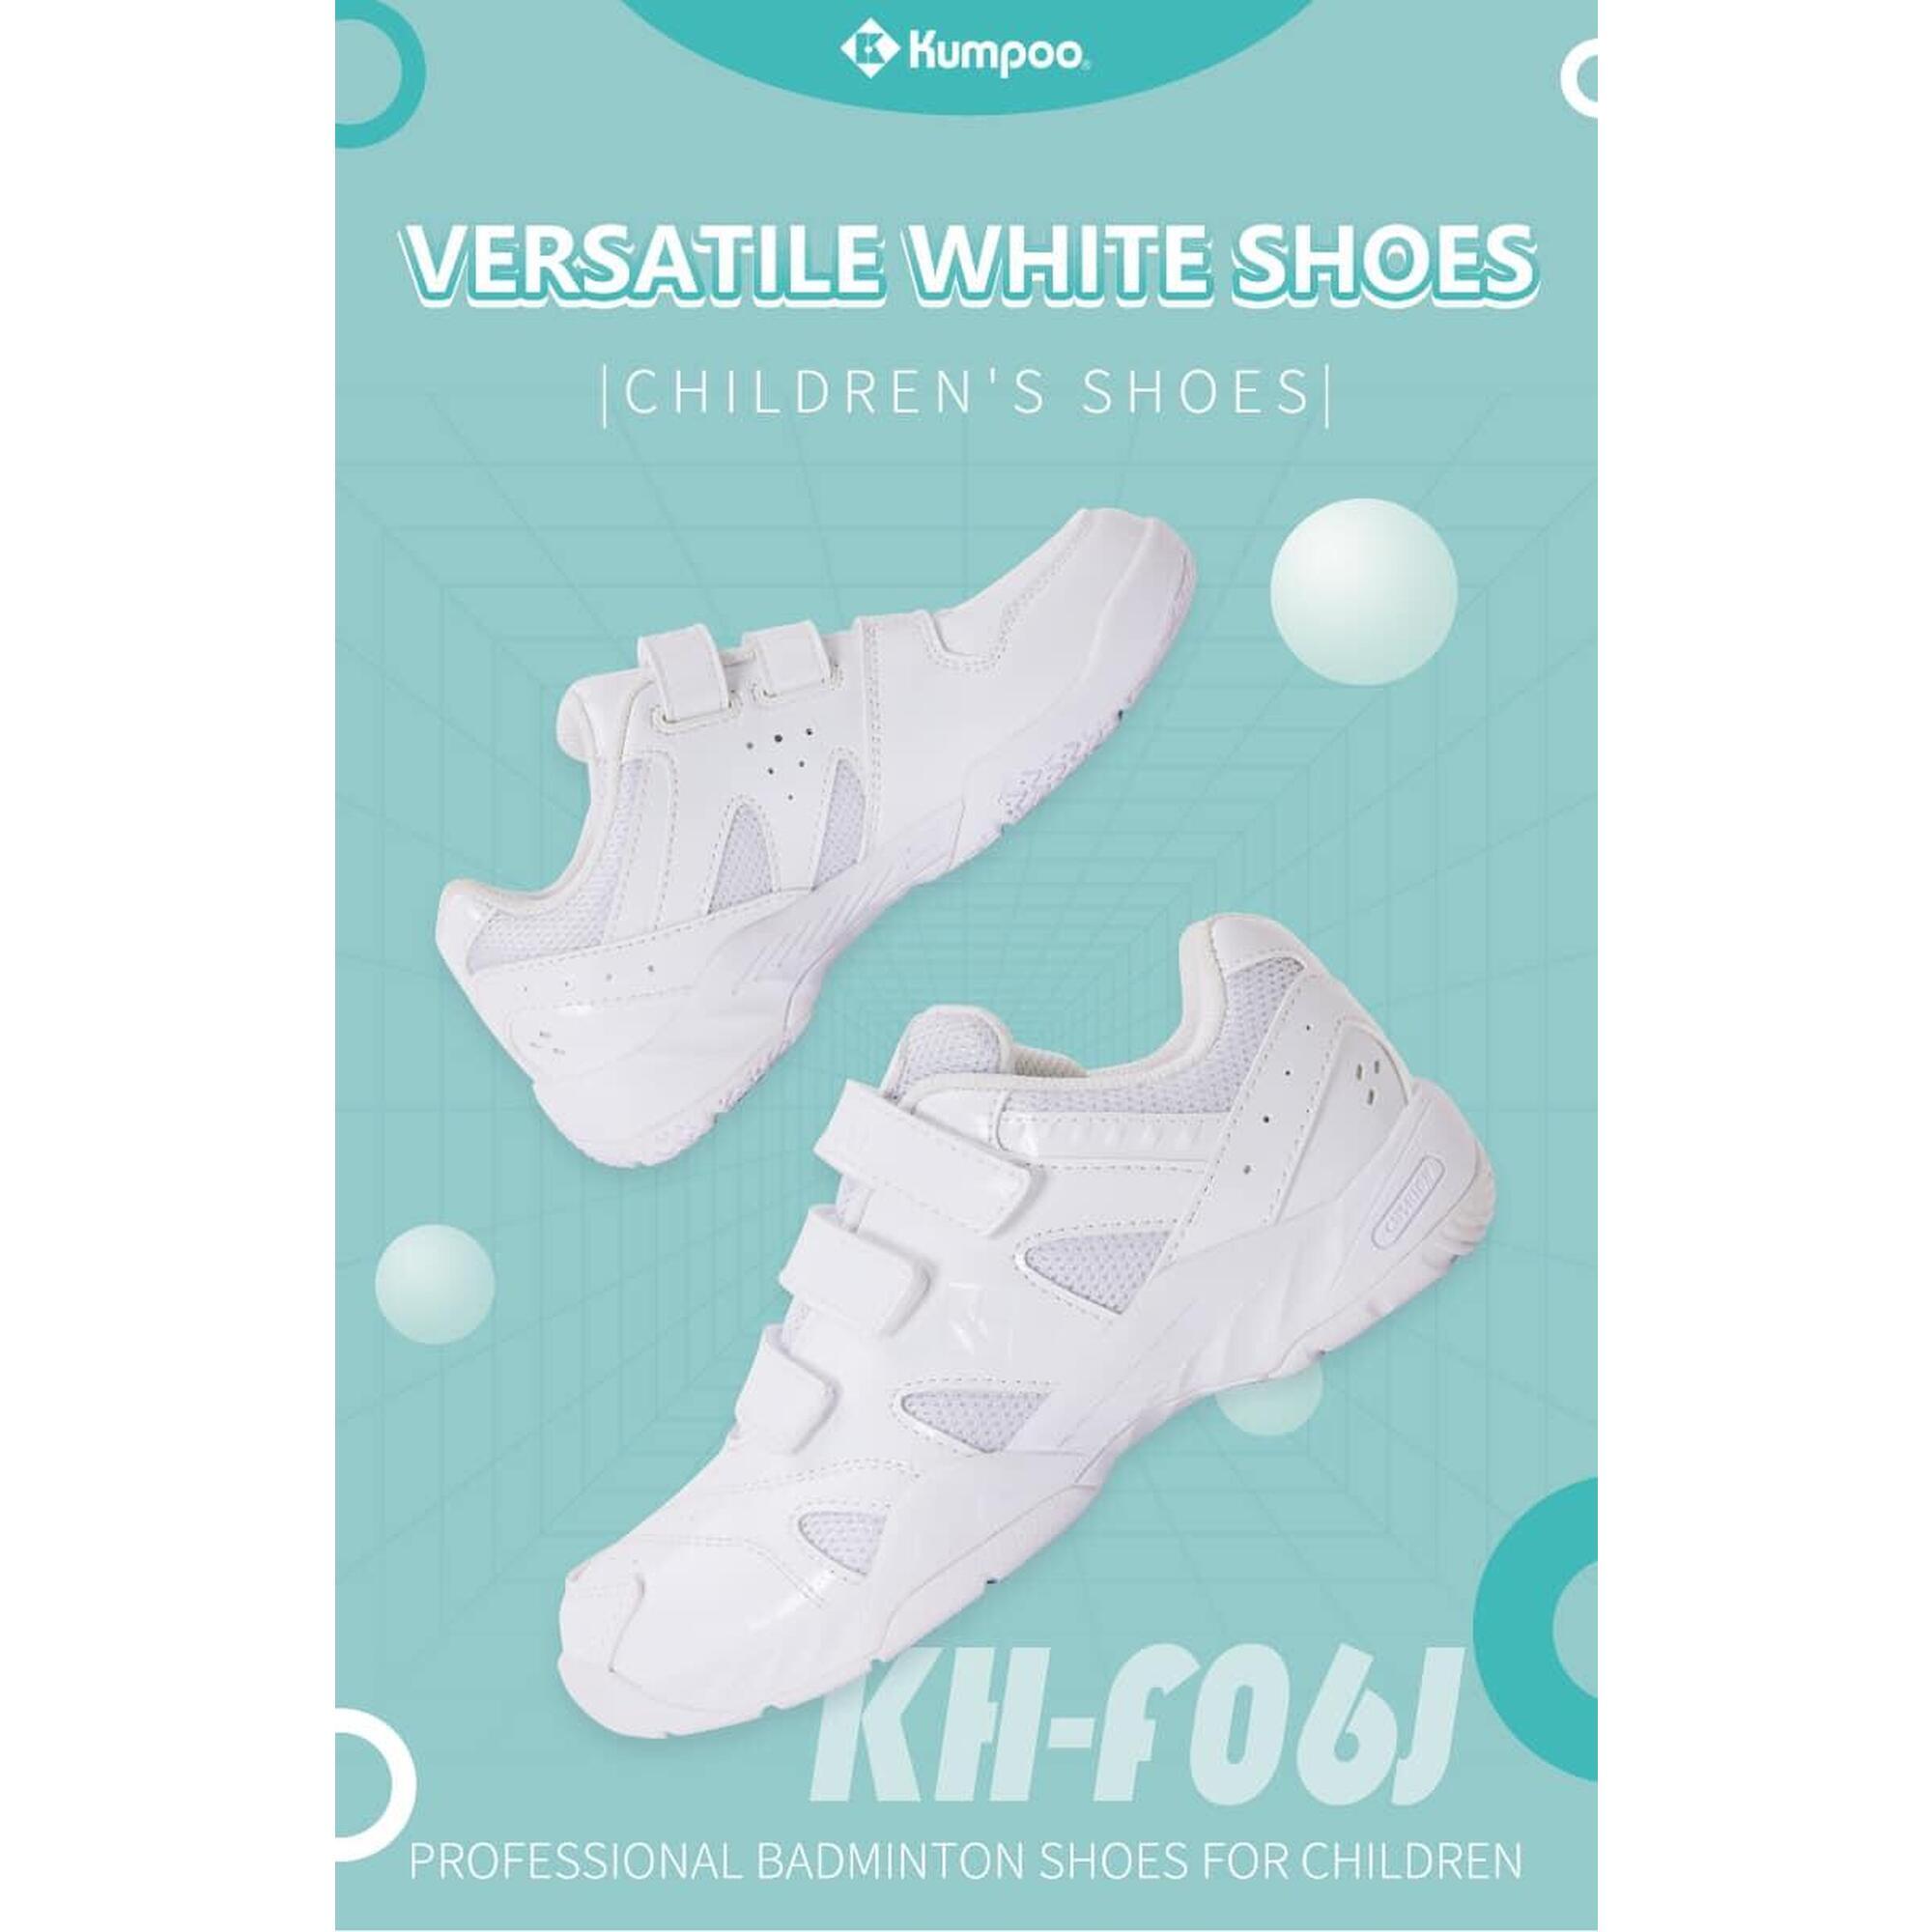 (預售) KH-F06J 兒童魔術貼專業羽毛球鞋 - 白色